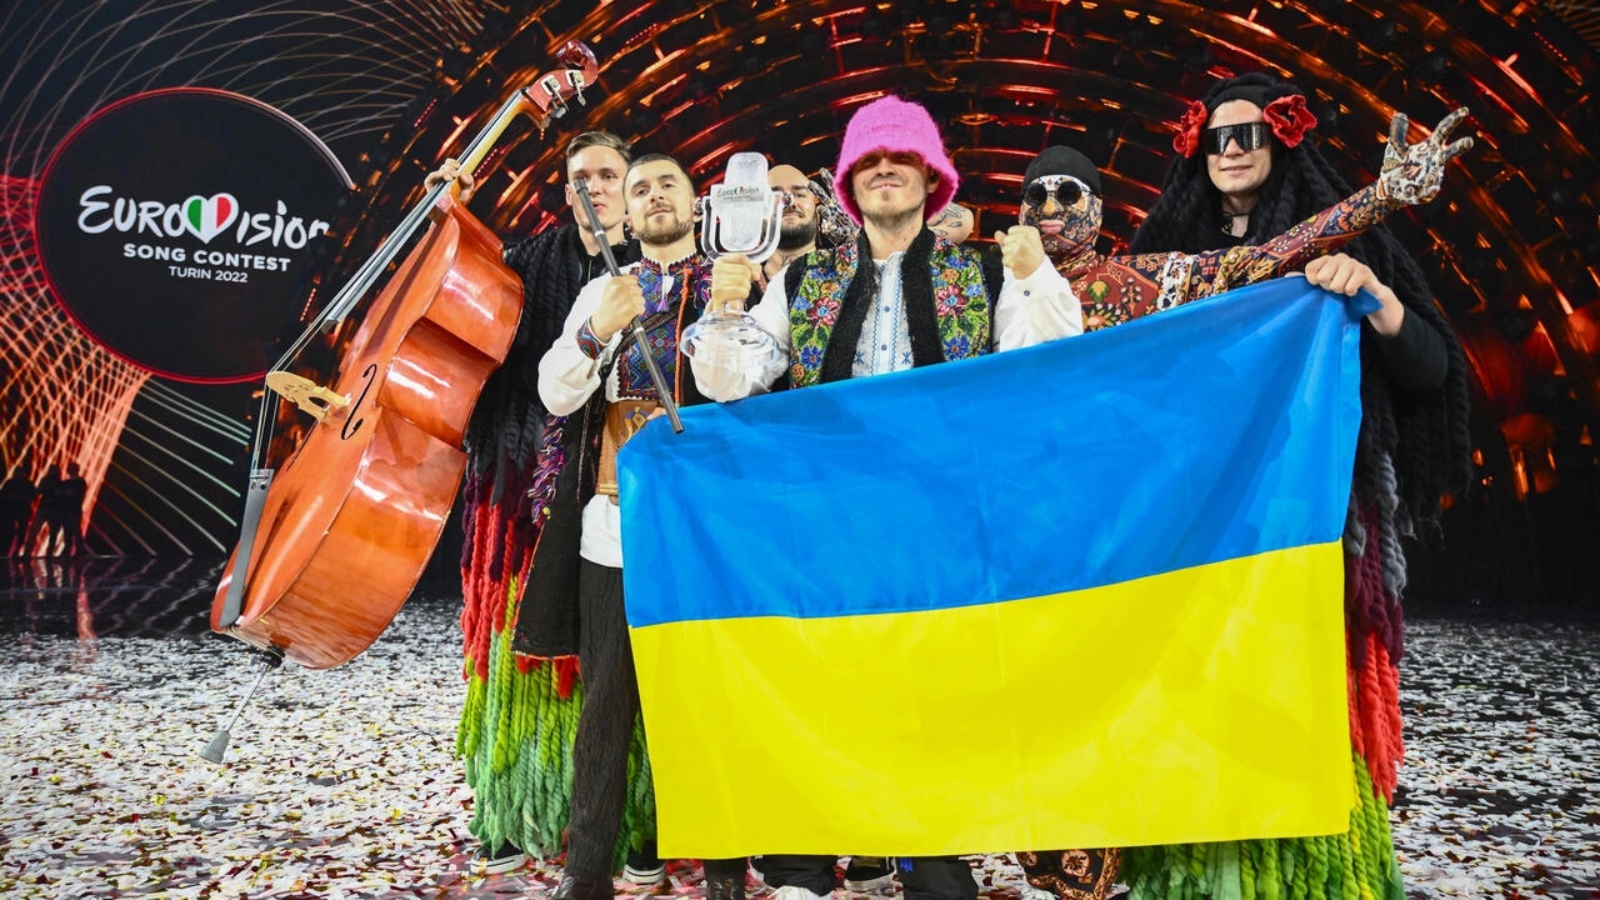 فرقة أوركسترا كالوش الأوكرانية تحتفل بفوزها في مسابقة الأغنية الأوروبية، في تورينو (إيطاليا)، السبت 14 مايو 2022.